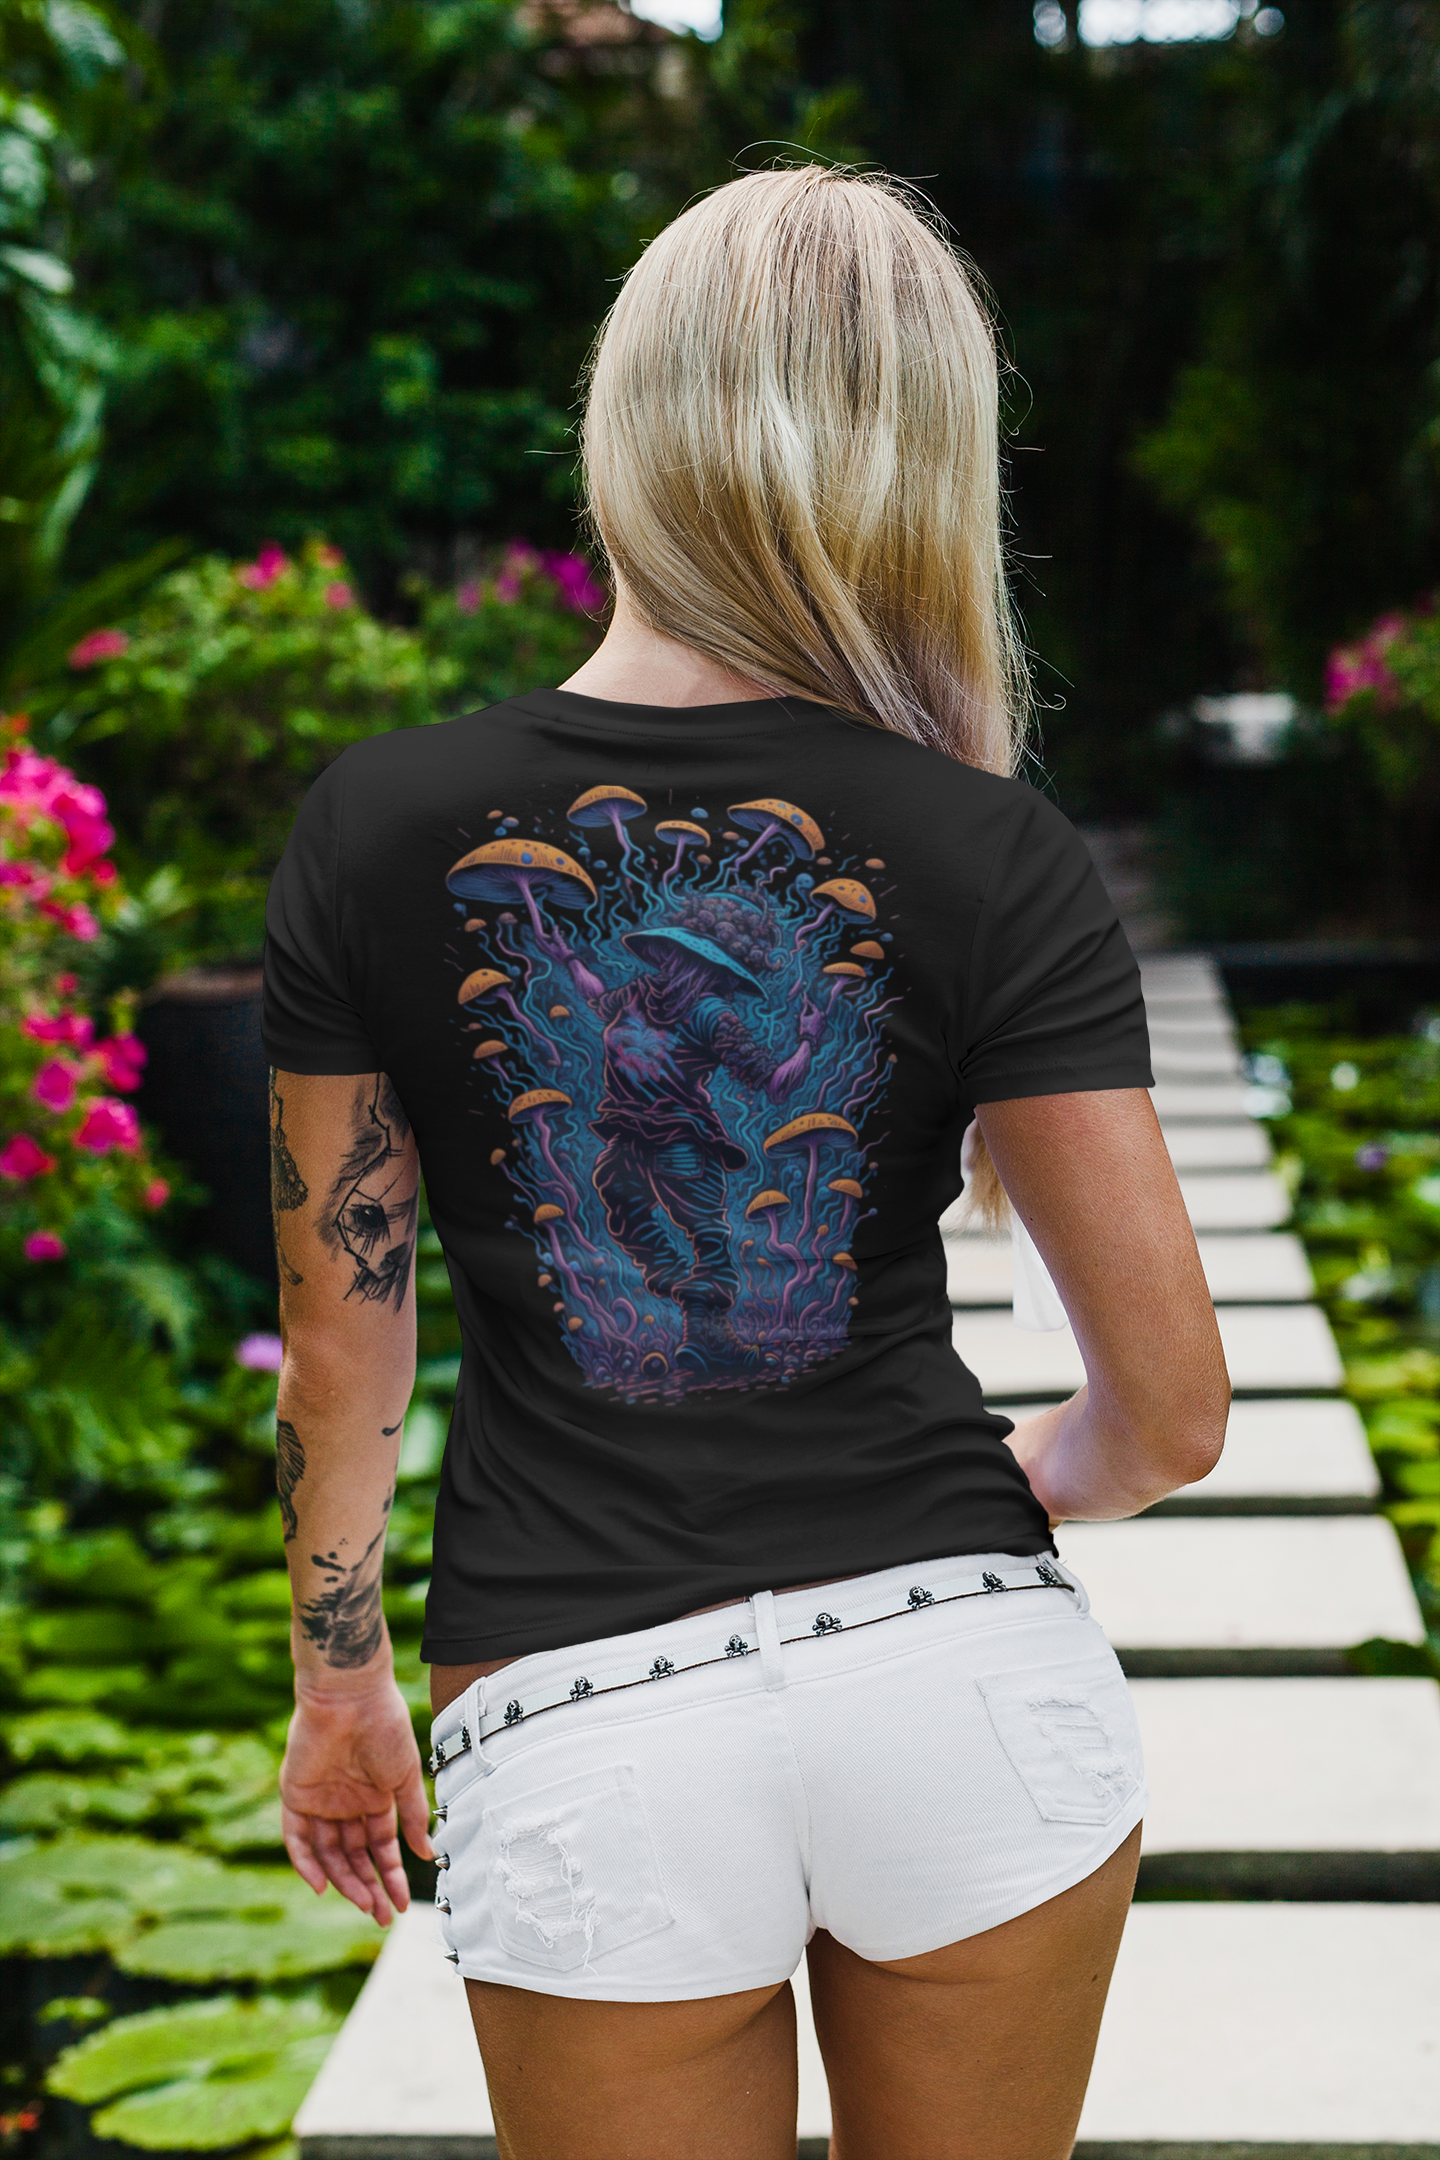 Psychedelic Rave Girl - Unisex T-Shirt - CatsOnDrugs